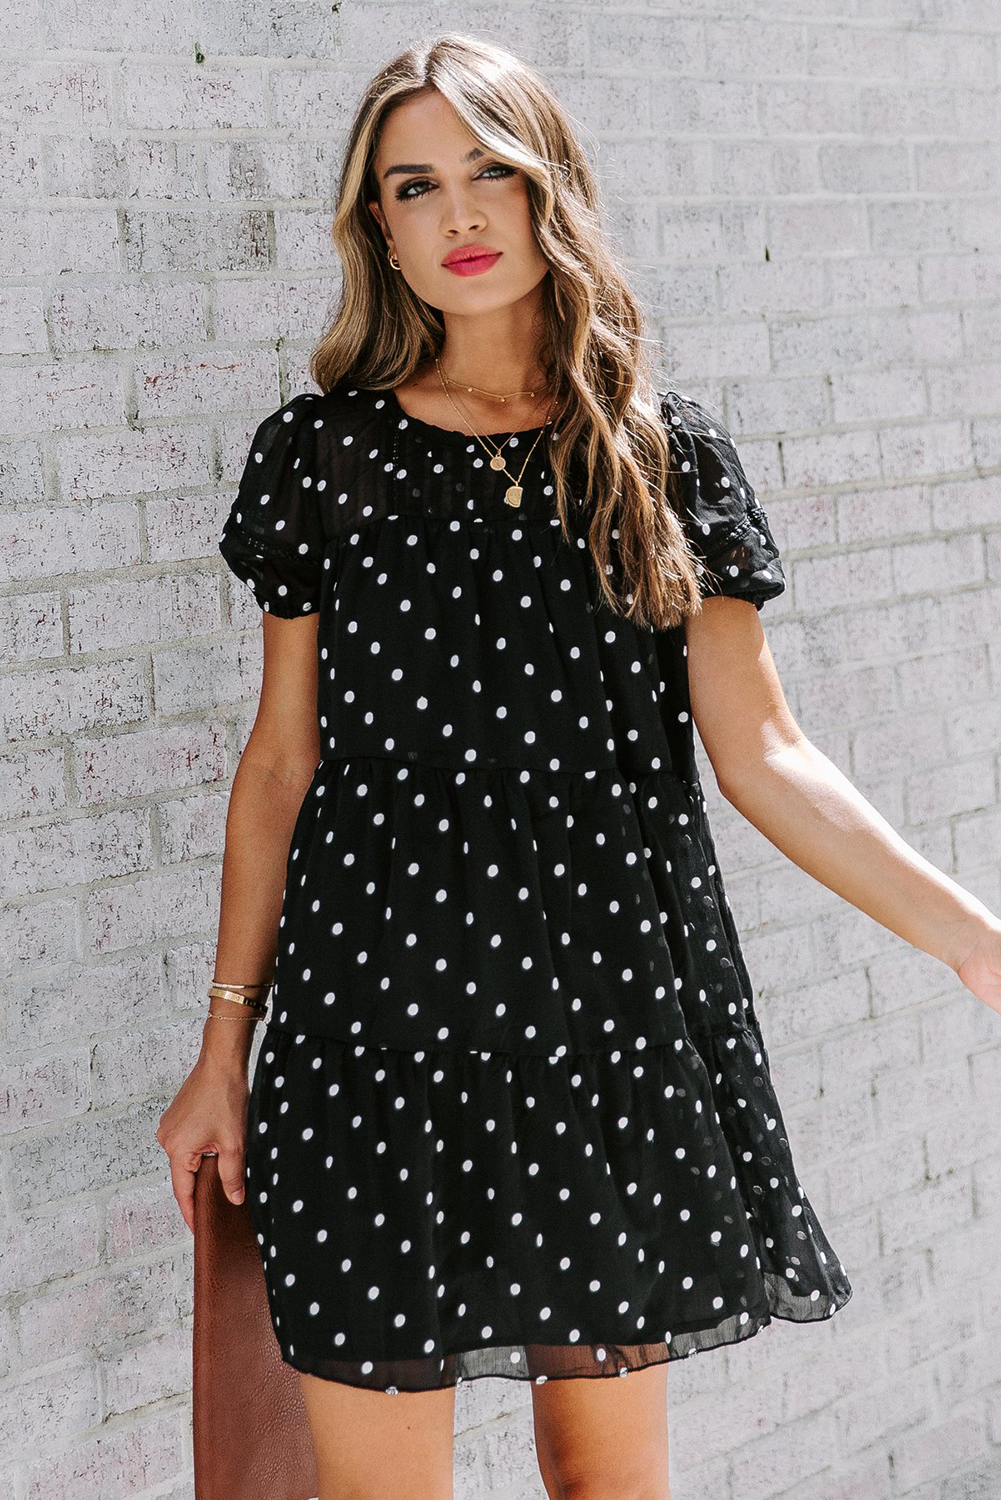 Black Polka Dot Tiered Swing Mini Dress - (US 8-10)M